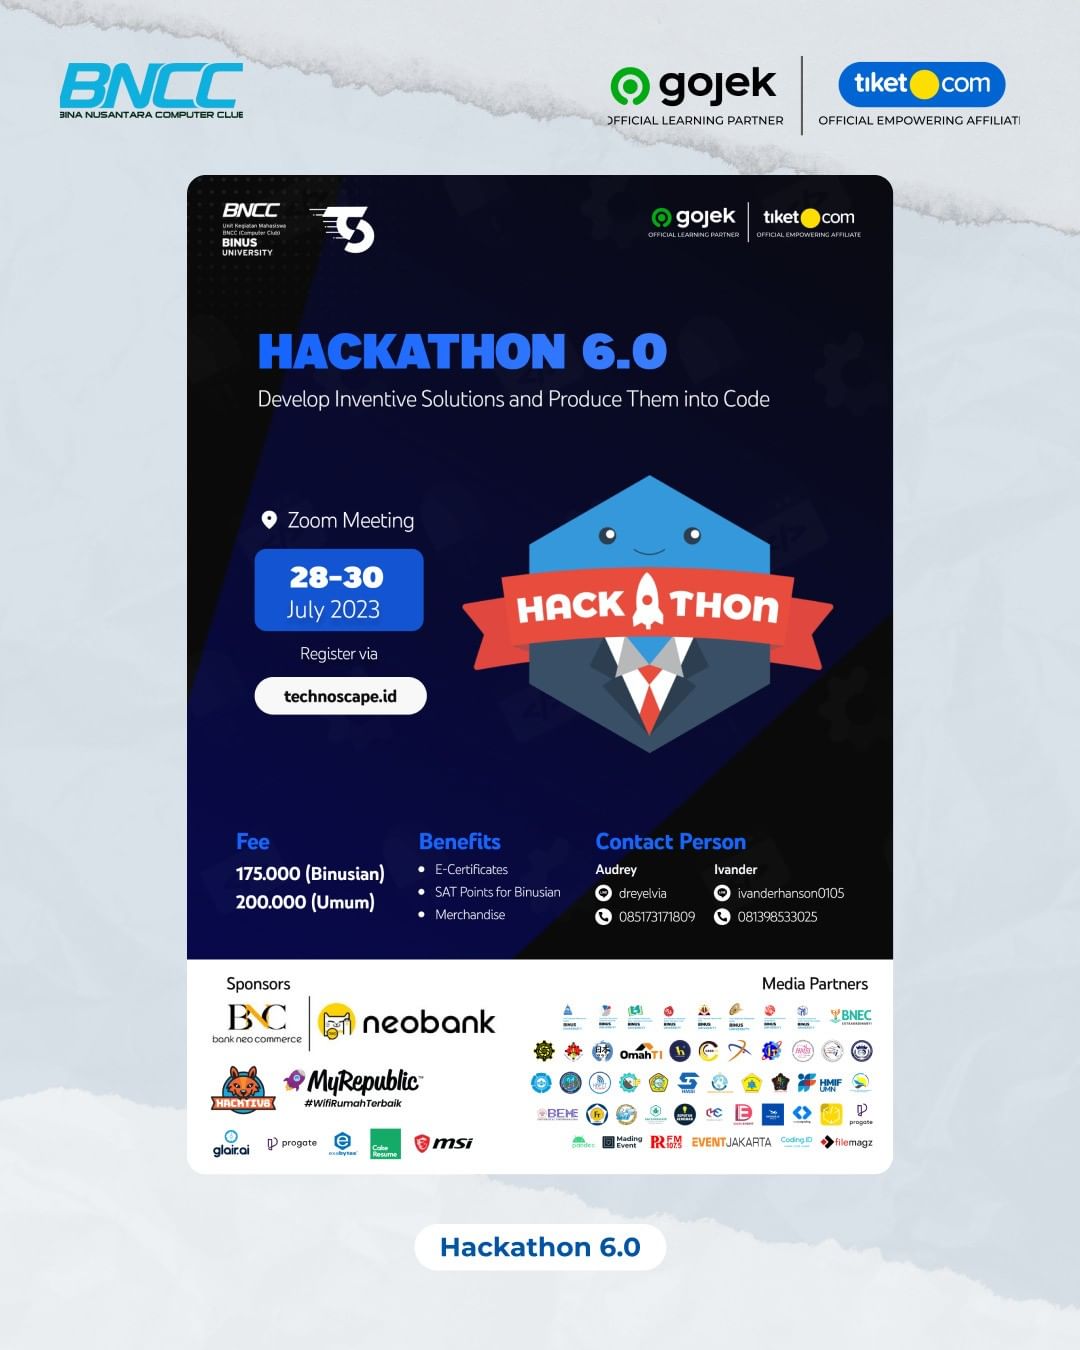 Hackathon 6.0